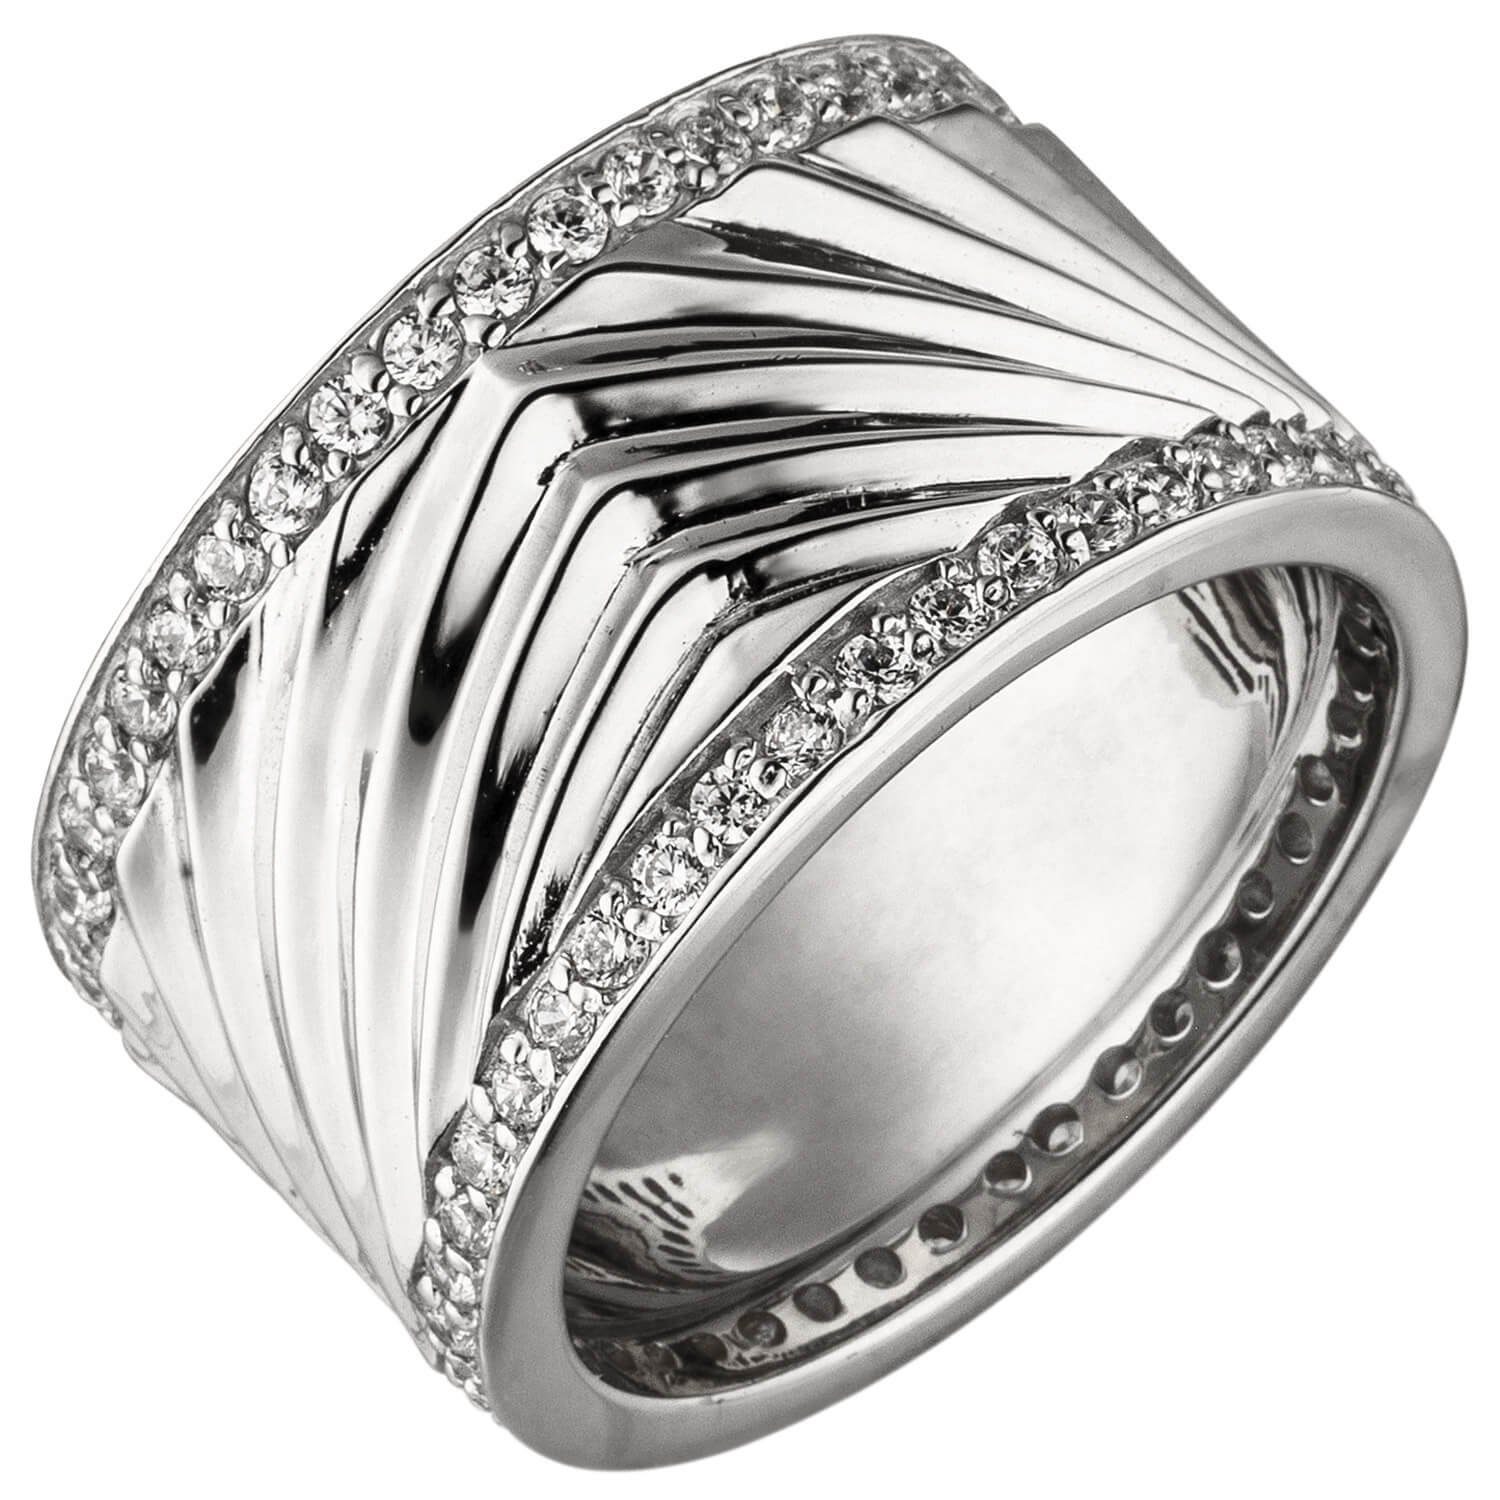 Schmuck Krone Silberring Breiter Ring 11,8mm Damenring aus 925 Silber mit  Zirkonia rundum Fingerring, Silber 925